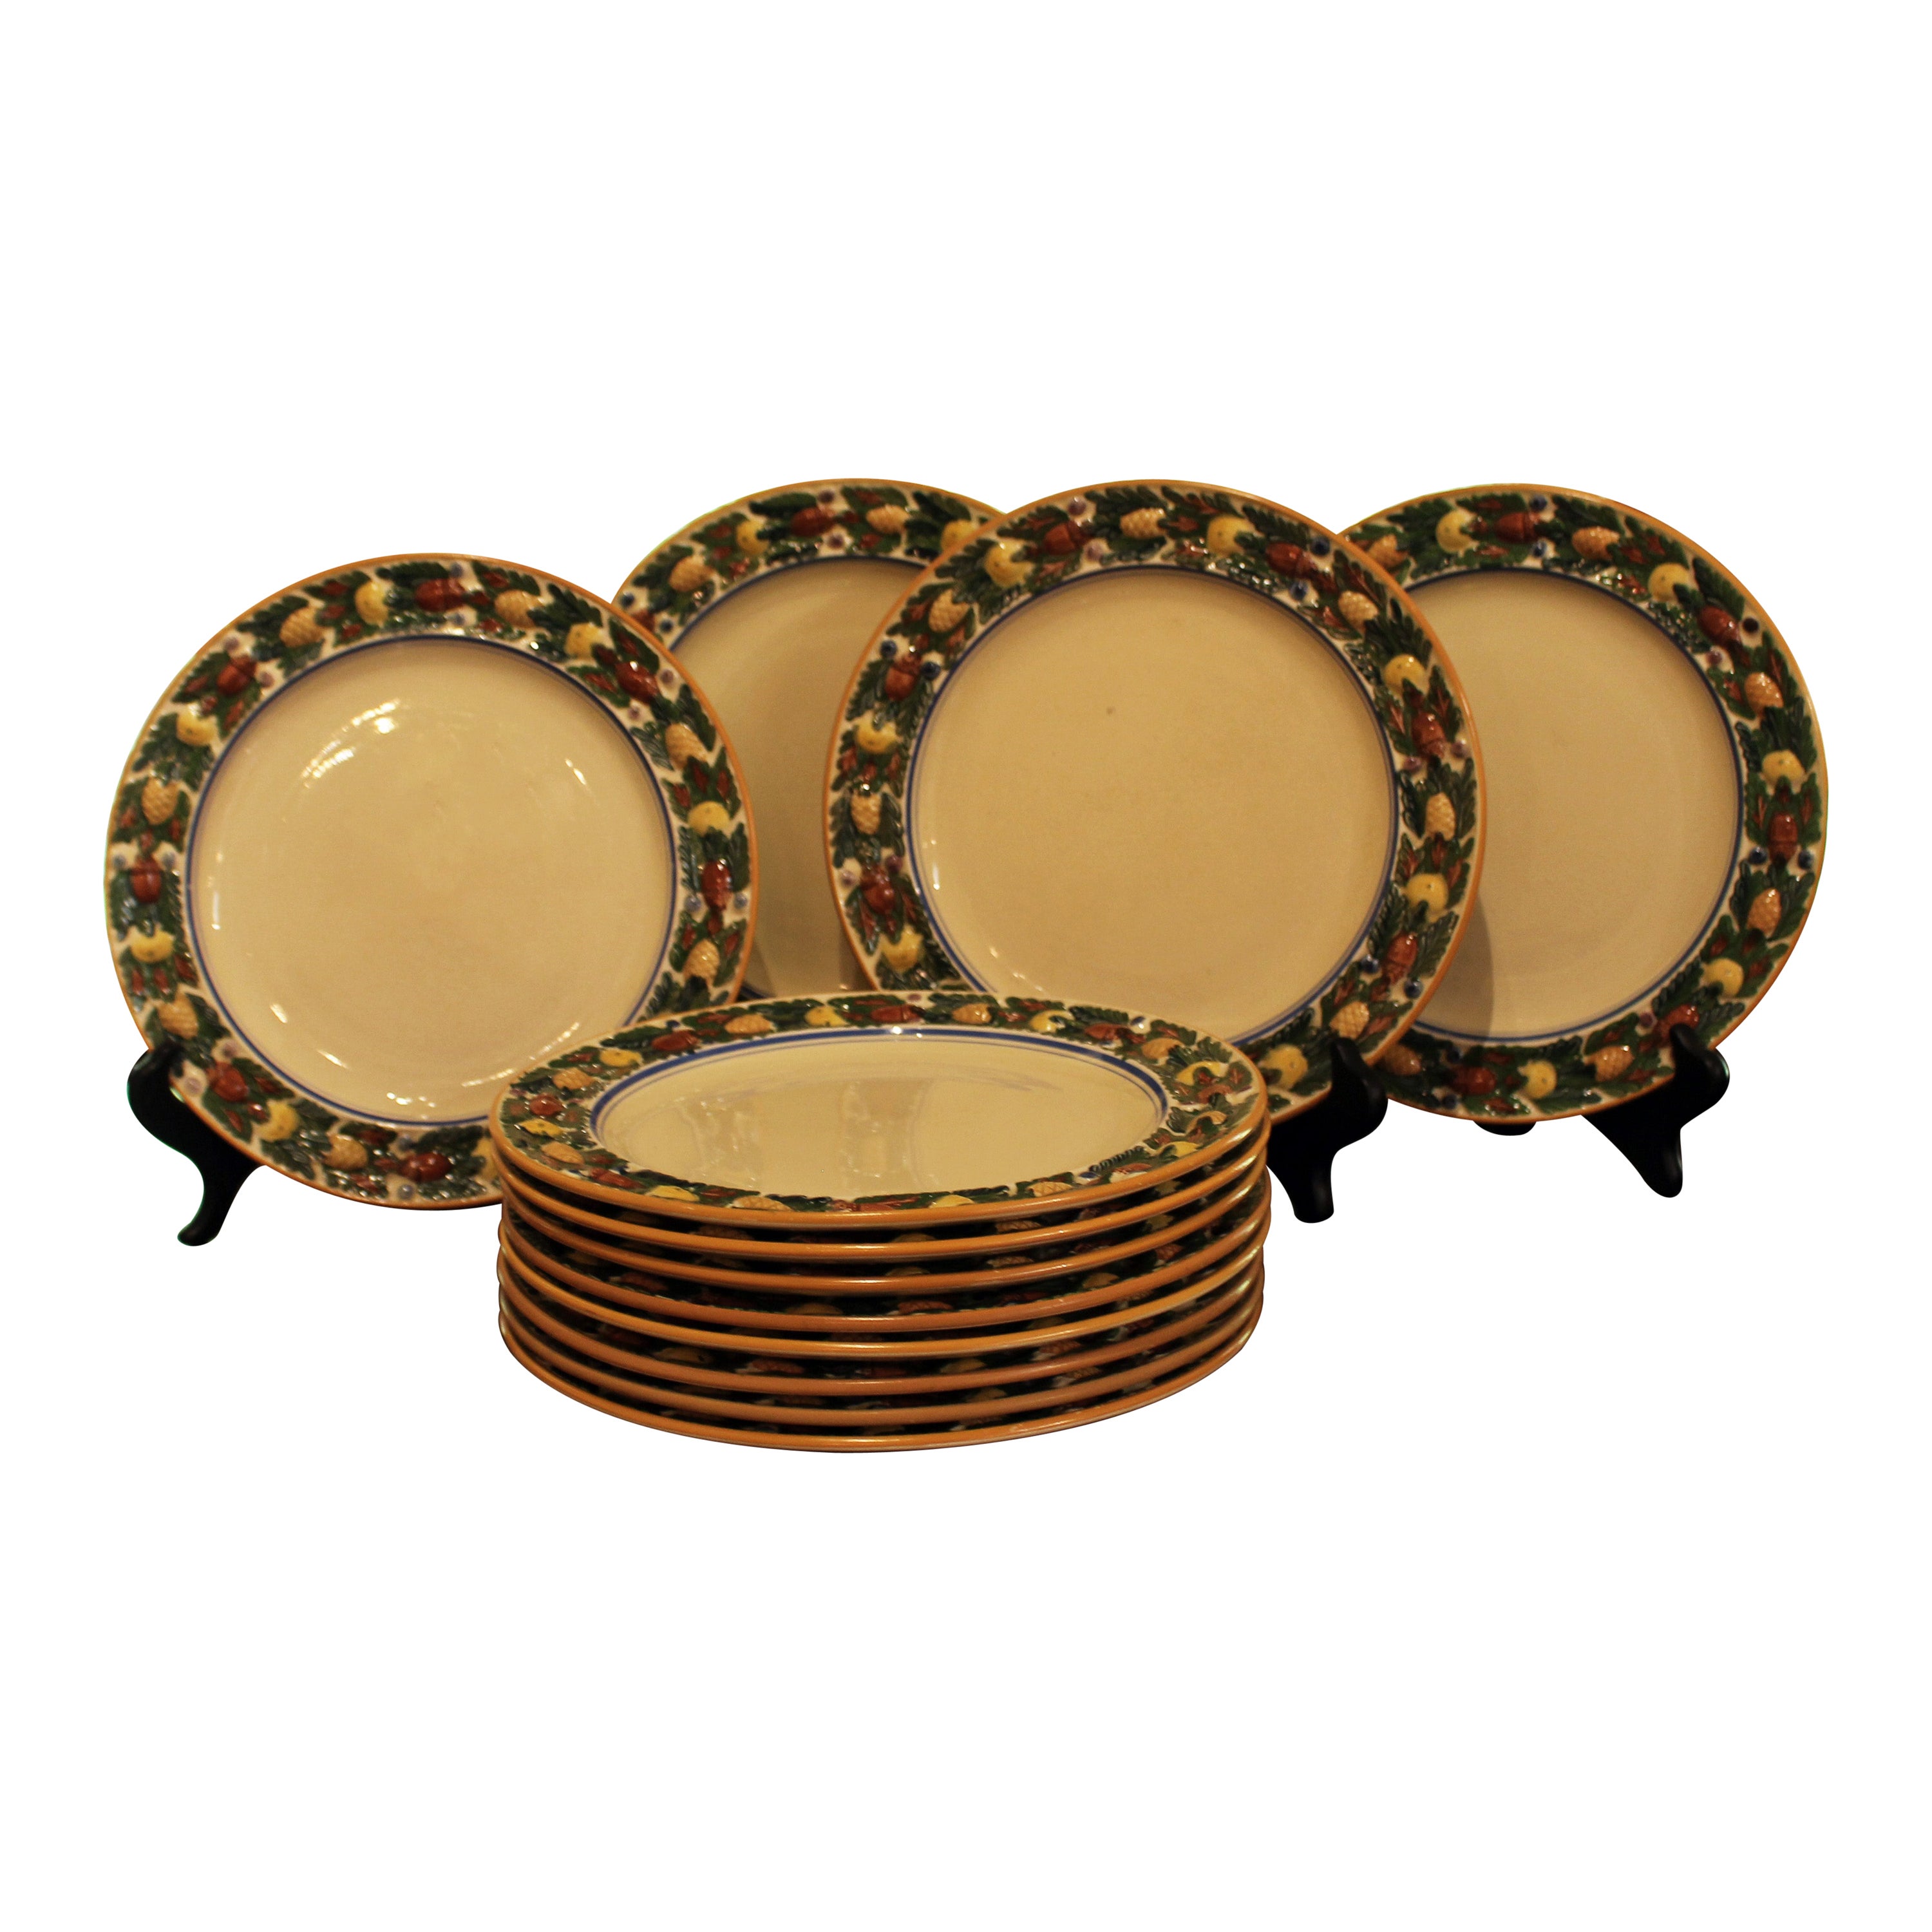 Circa 1920s "Della Robia" Bordered Titian Ware Dinner Plates Set of 12 For Sale